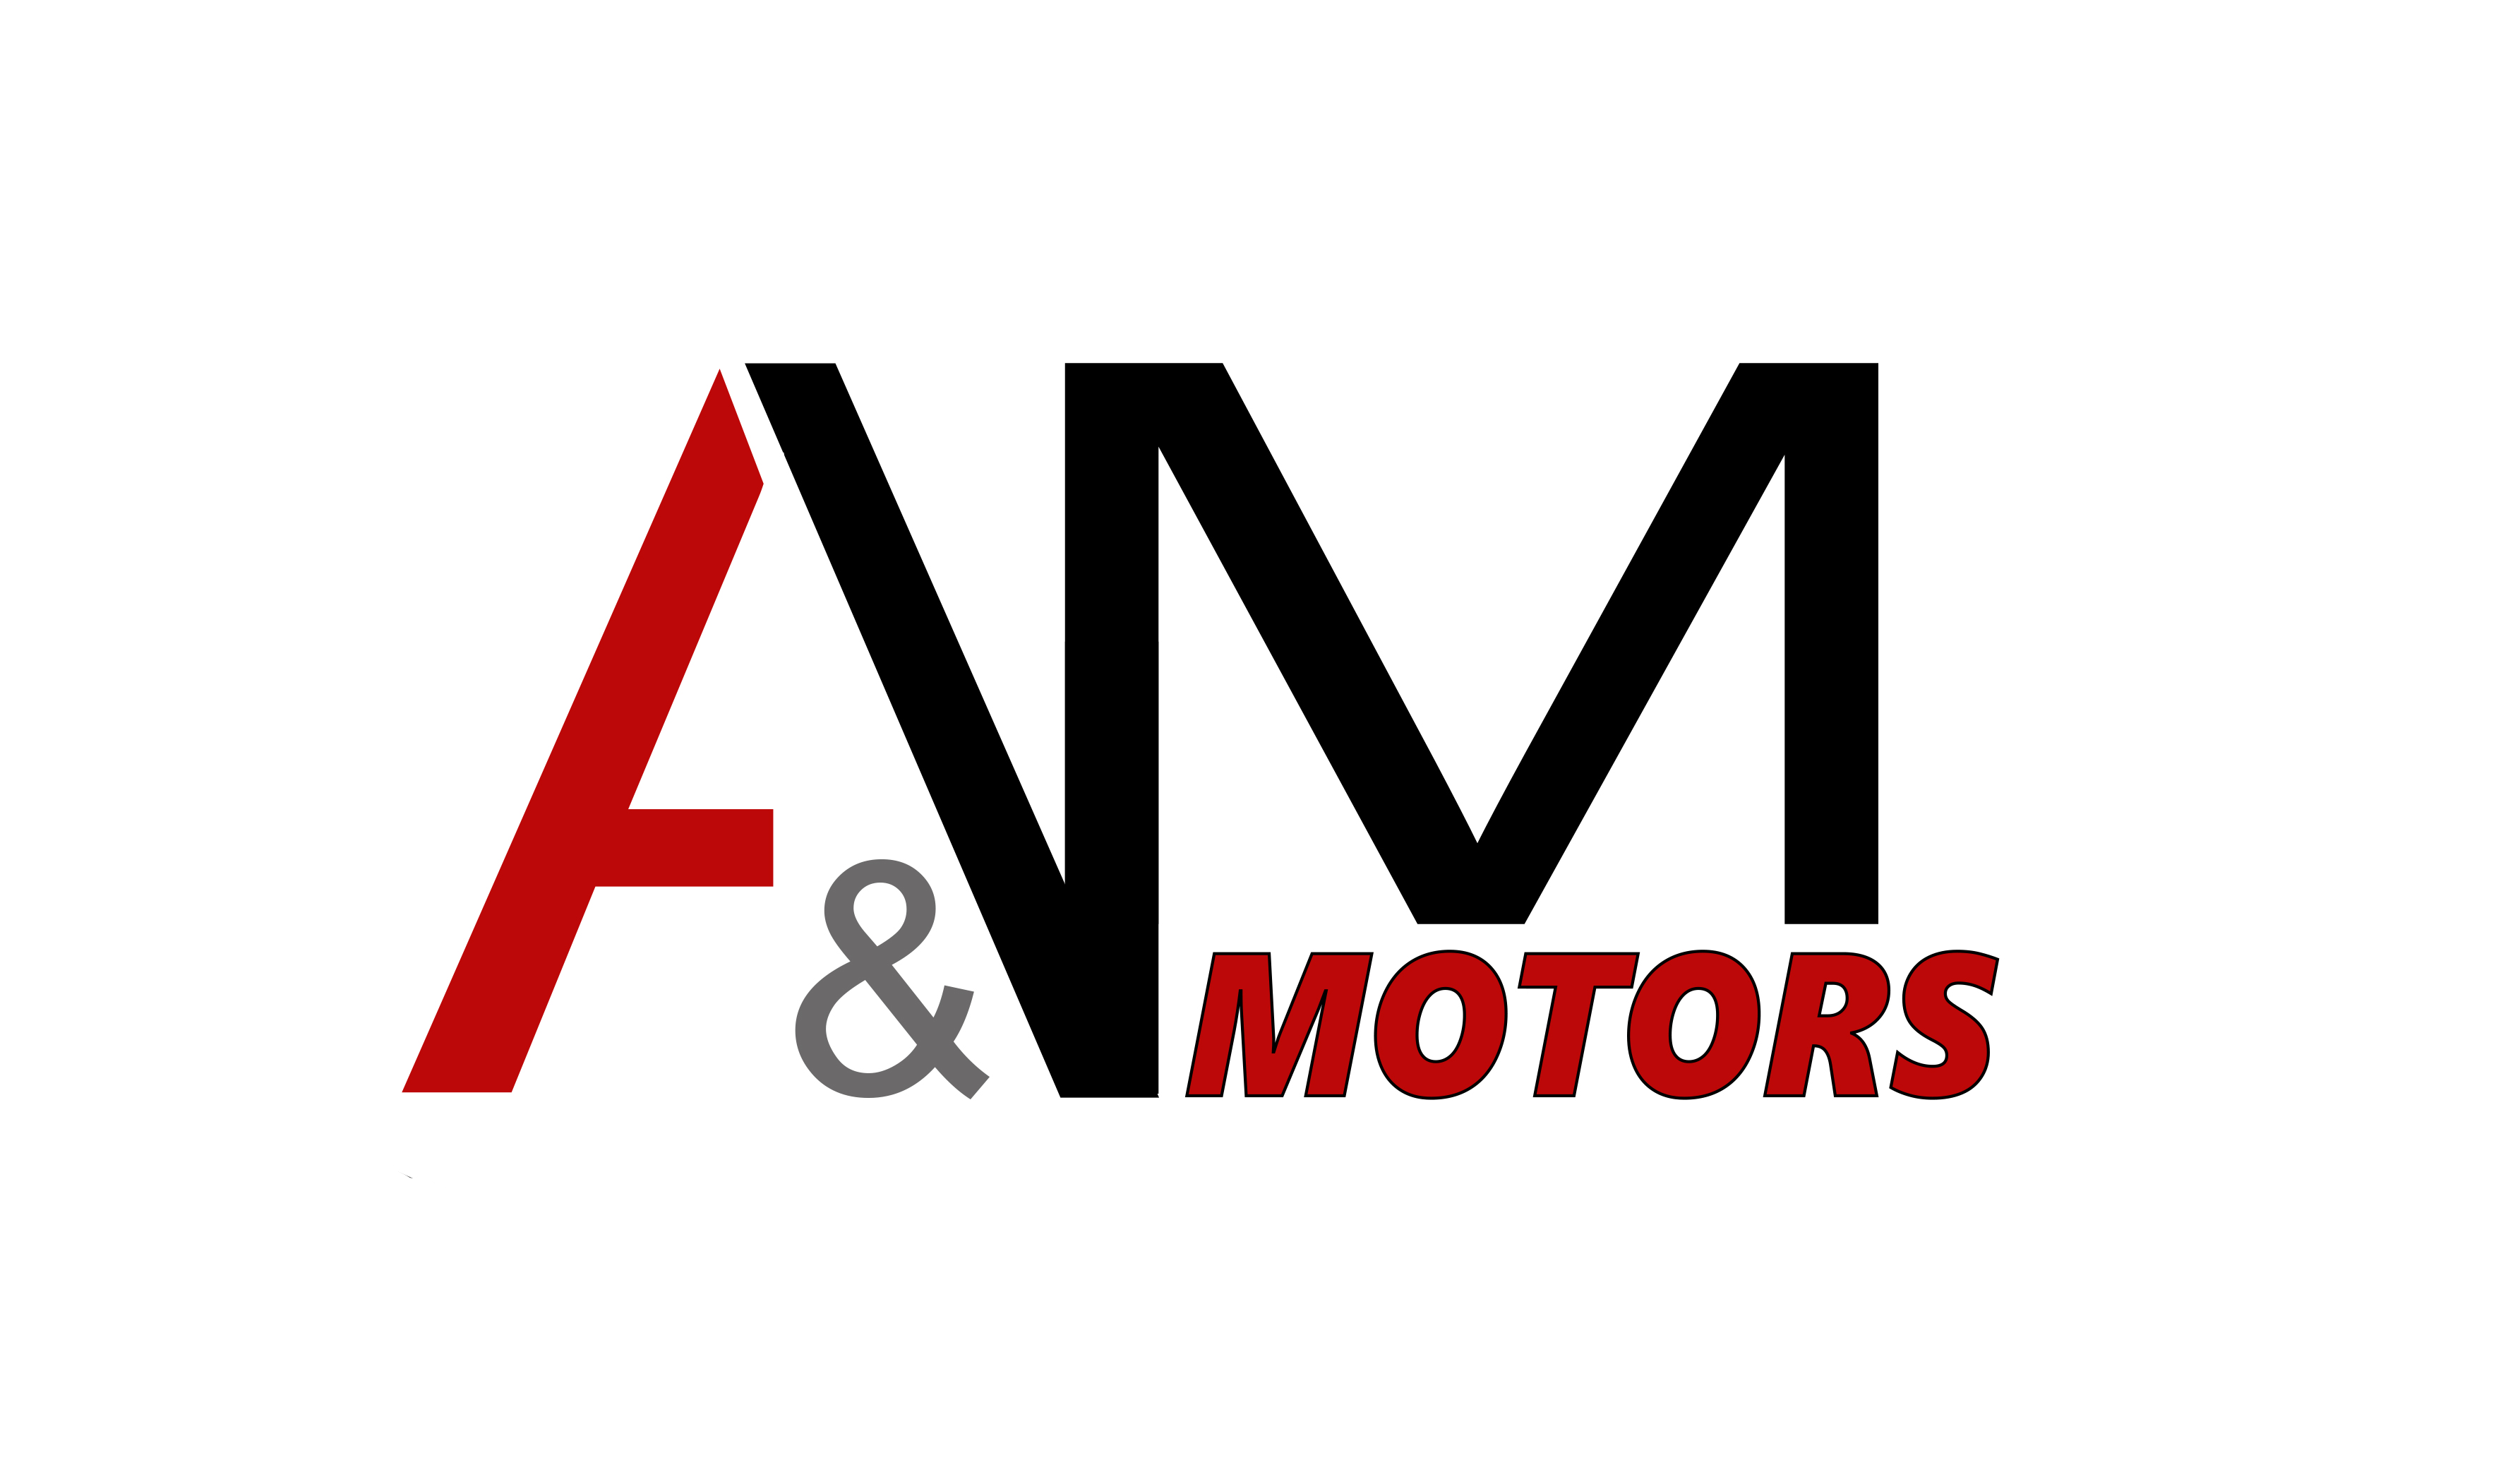 A & M Motors | Auto dealership in Dallas